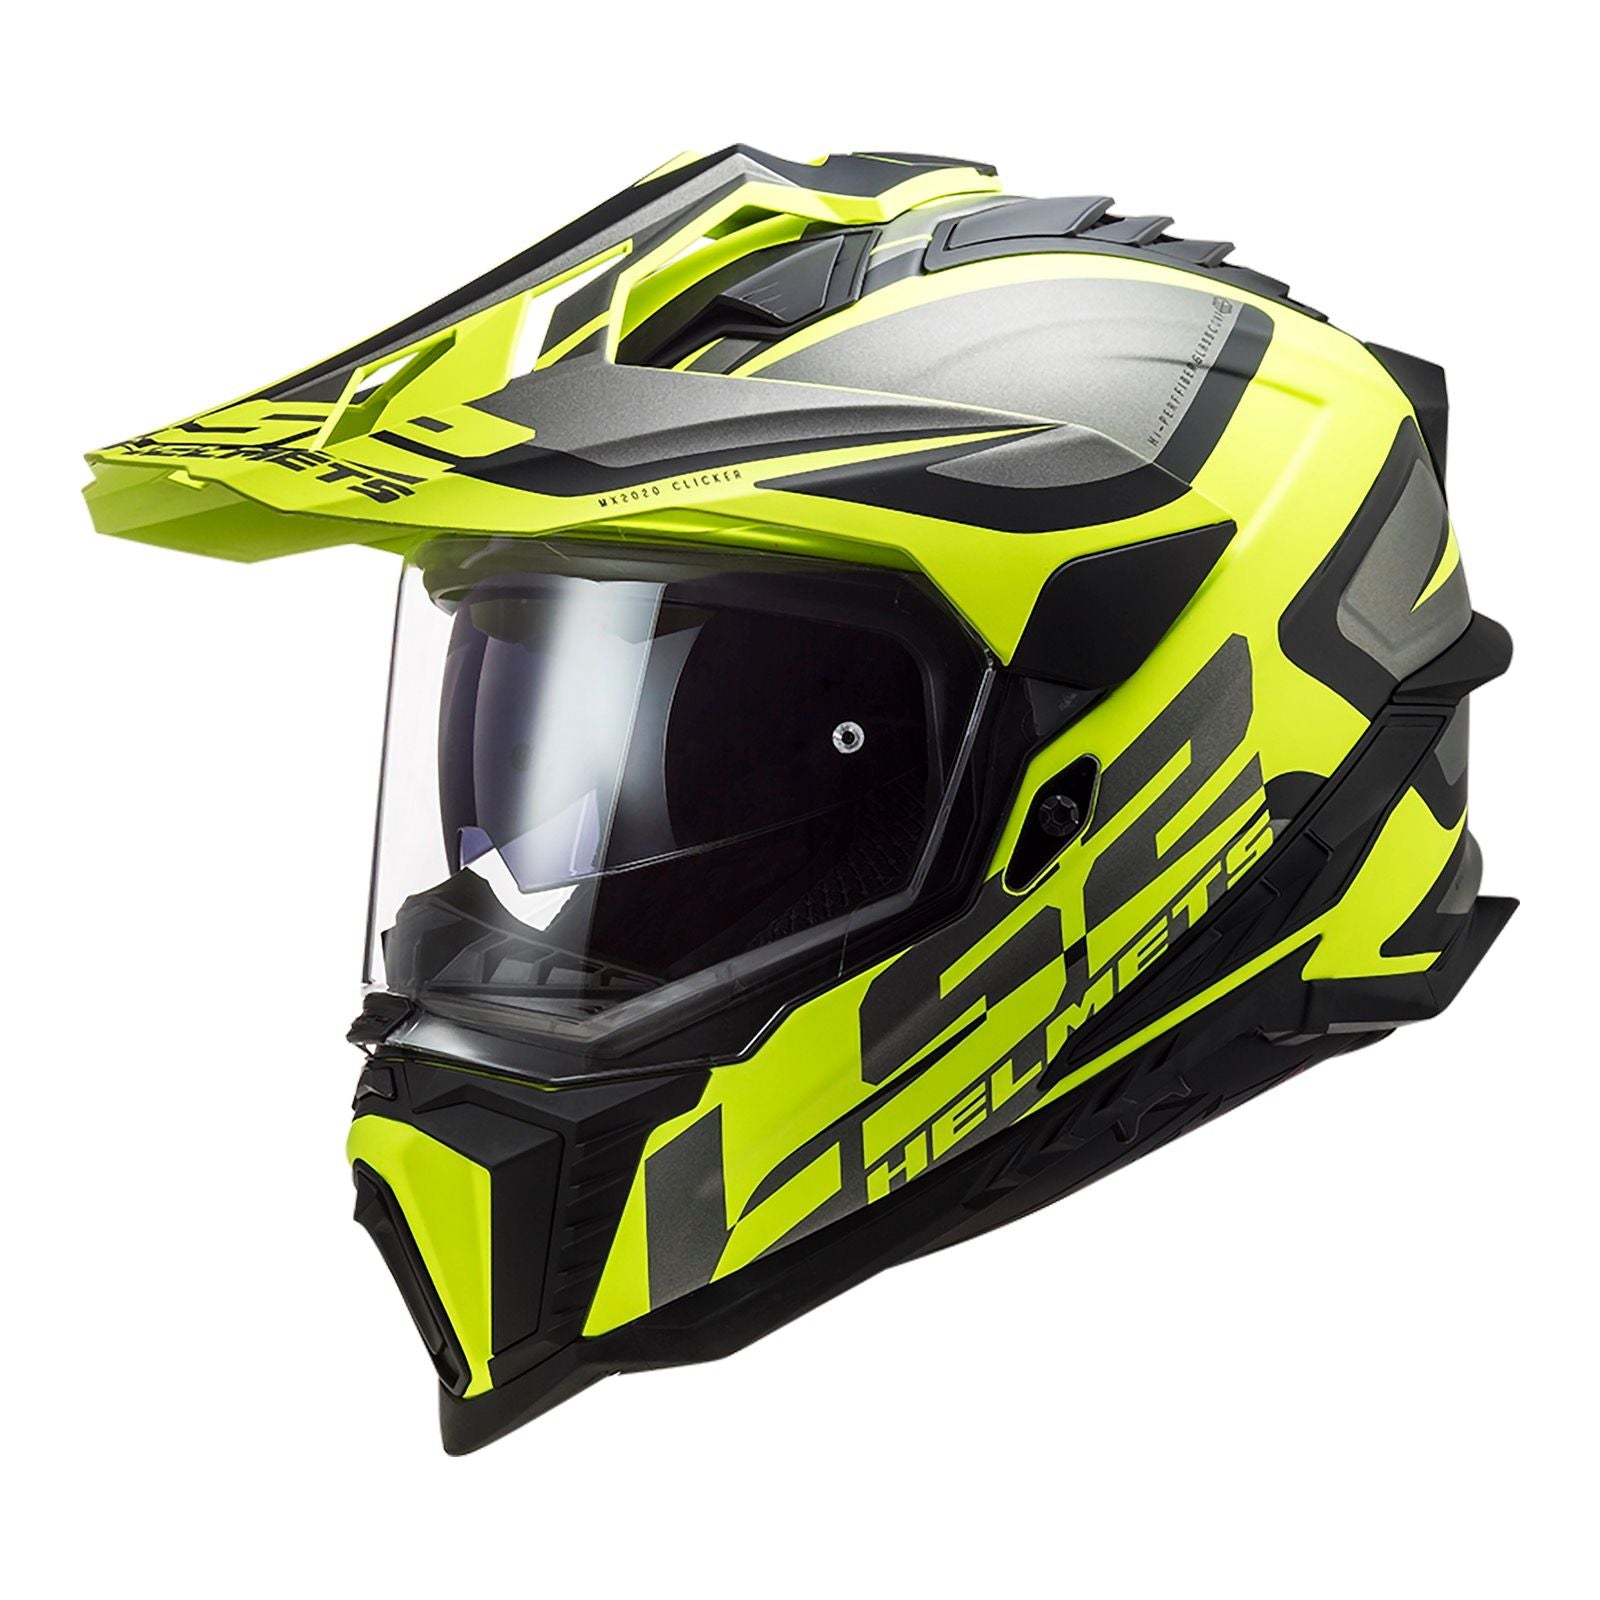 New LS2 Explorer Alter Helmet - Matte Black / Hi-Vis (XS) #LS2MX701ALTMBYXS